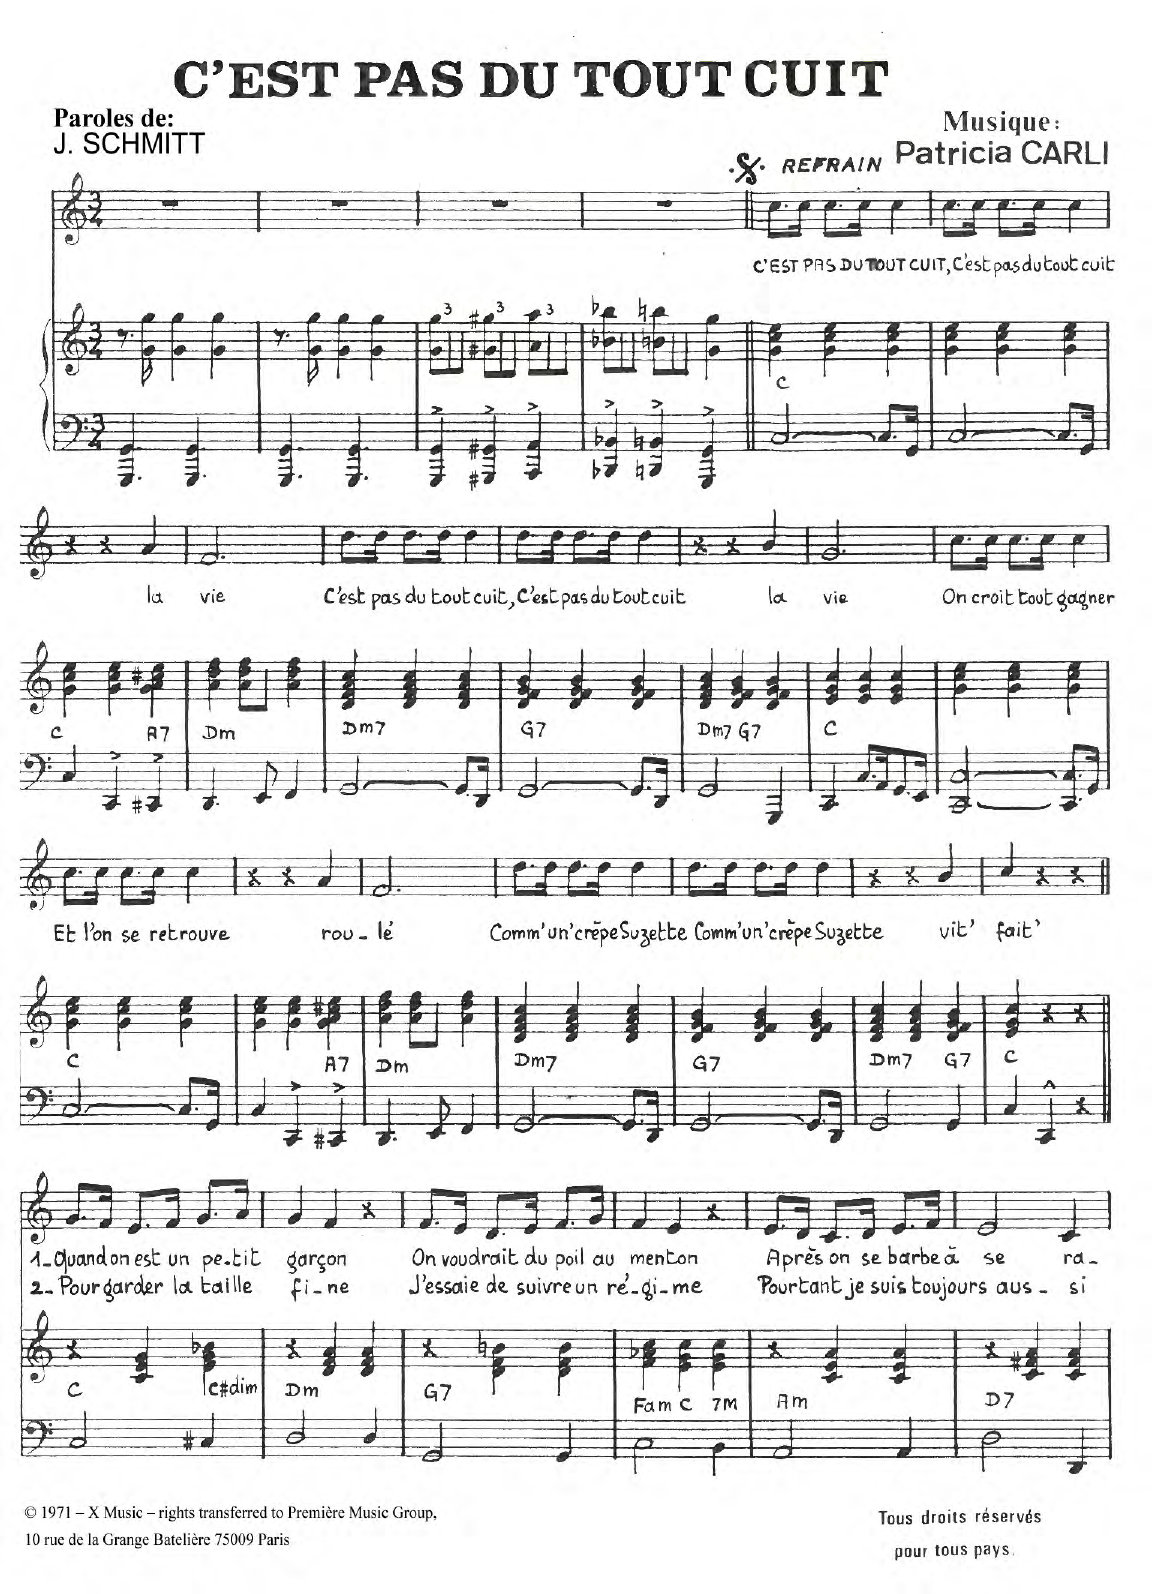 Carlos C'est Pas Du Tout Cuit Sheet Music Notes & Chords for Piano & Vocal - Download or Print PDF